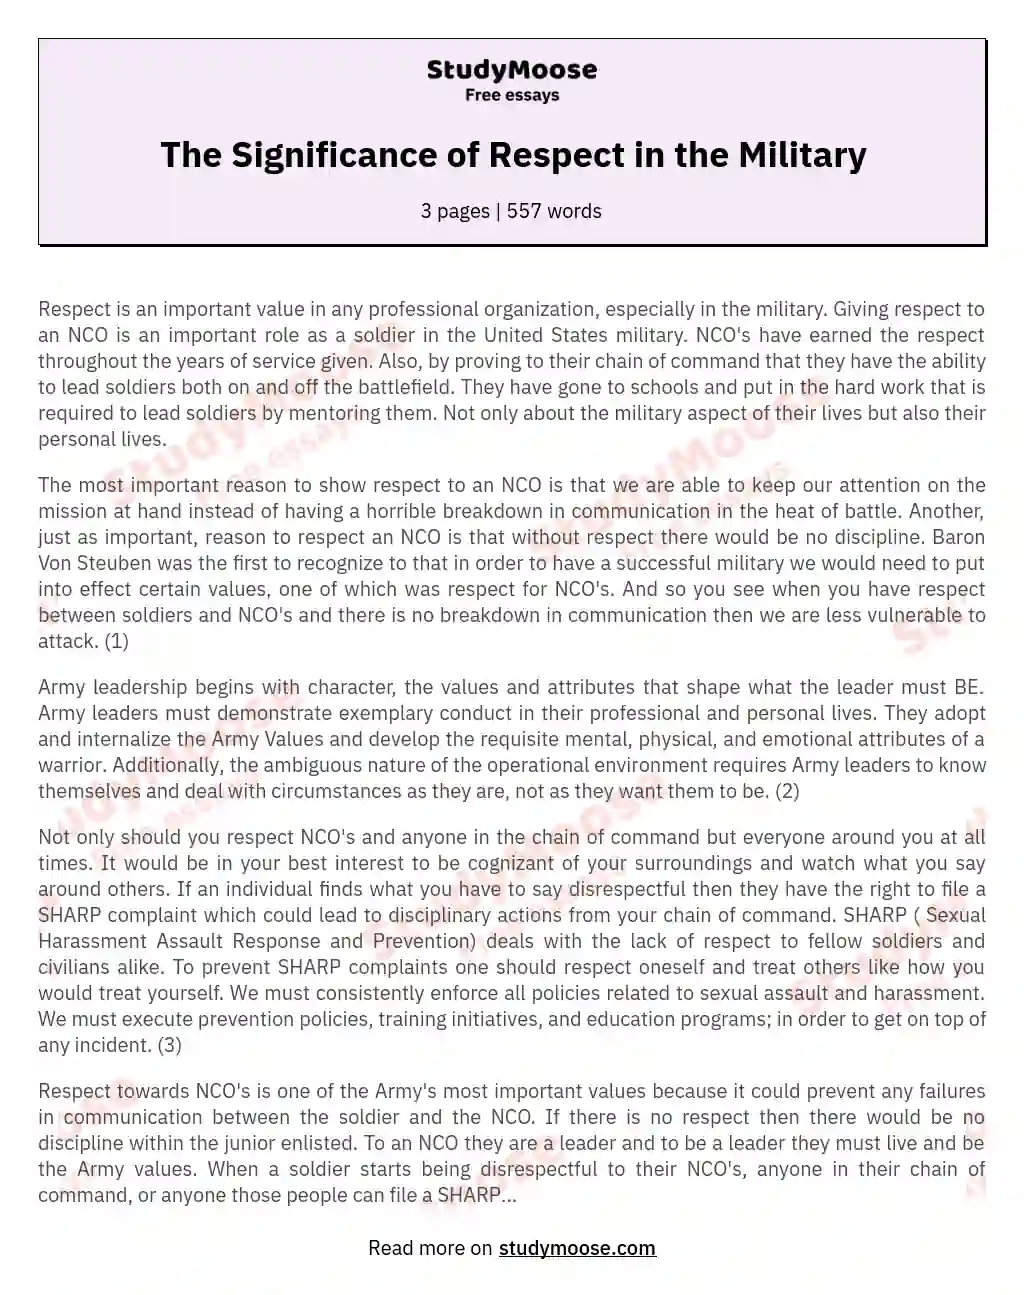 Respect Towards an NCO